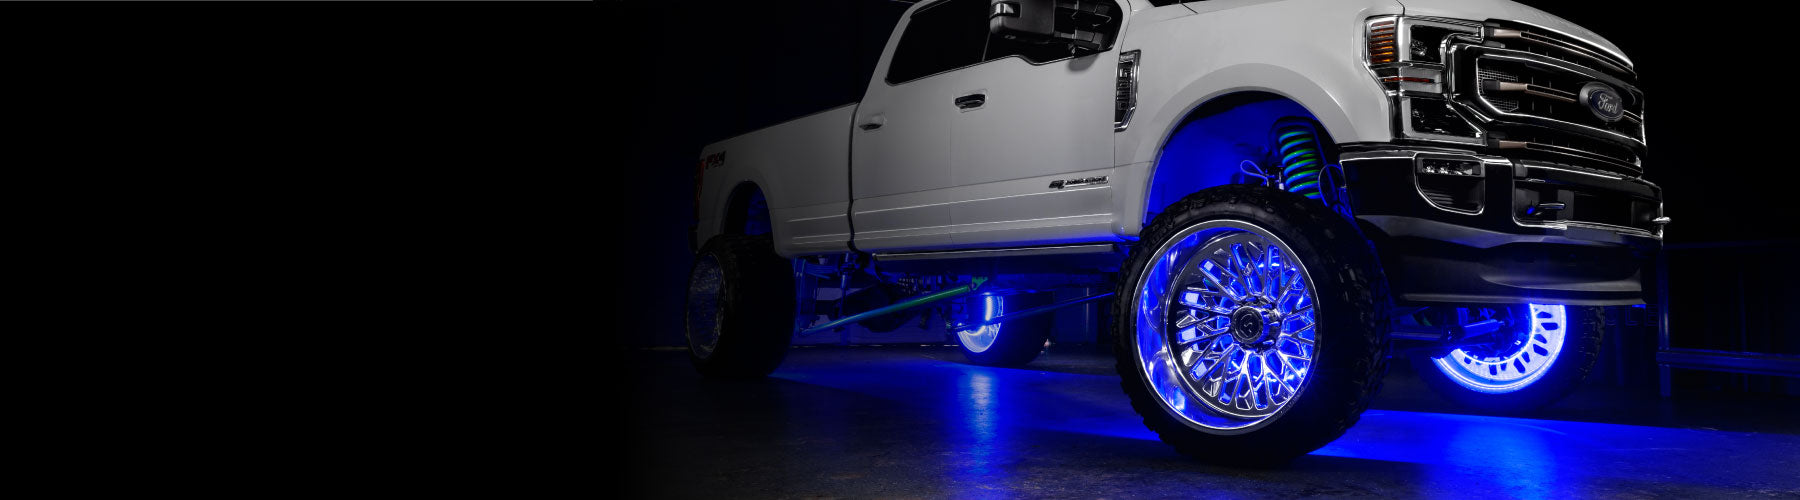 blue led lights for trucks